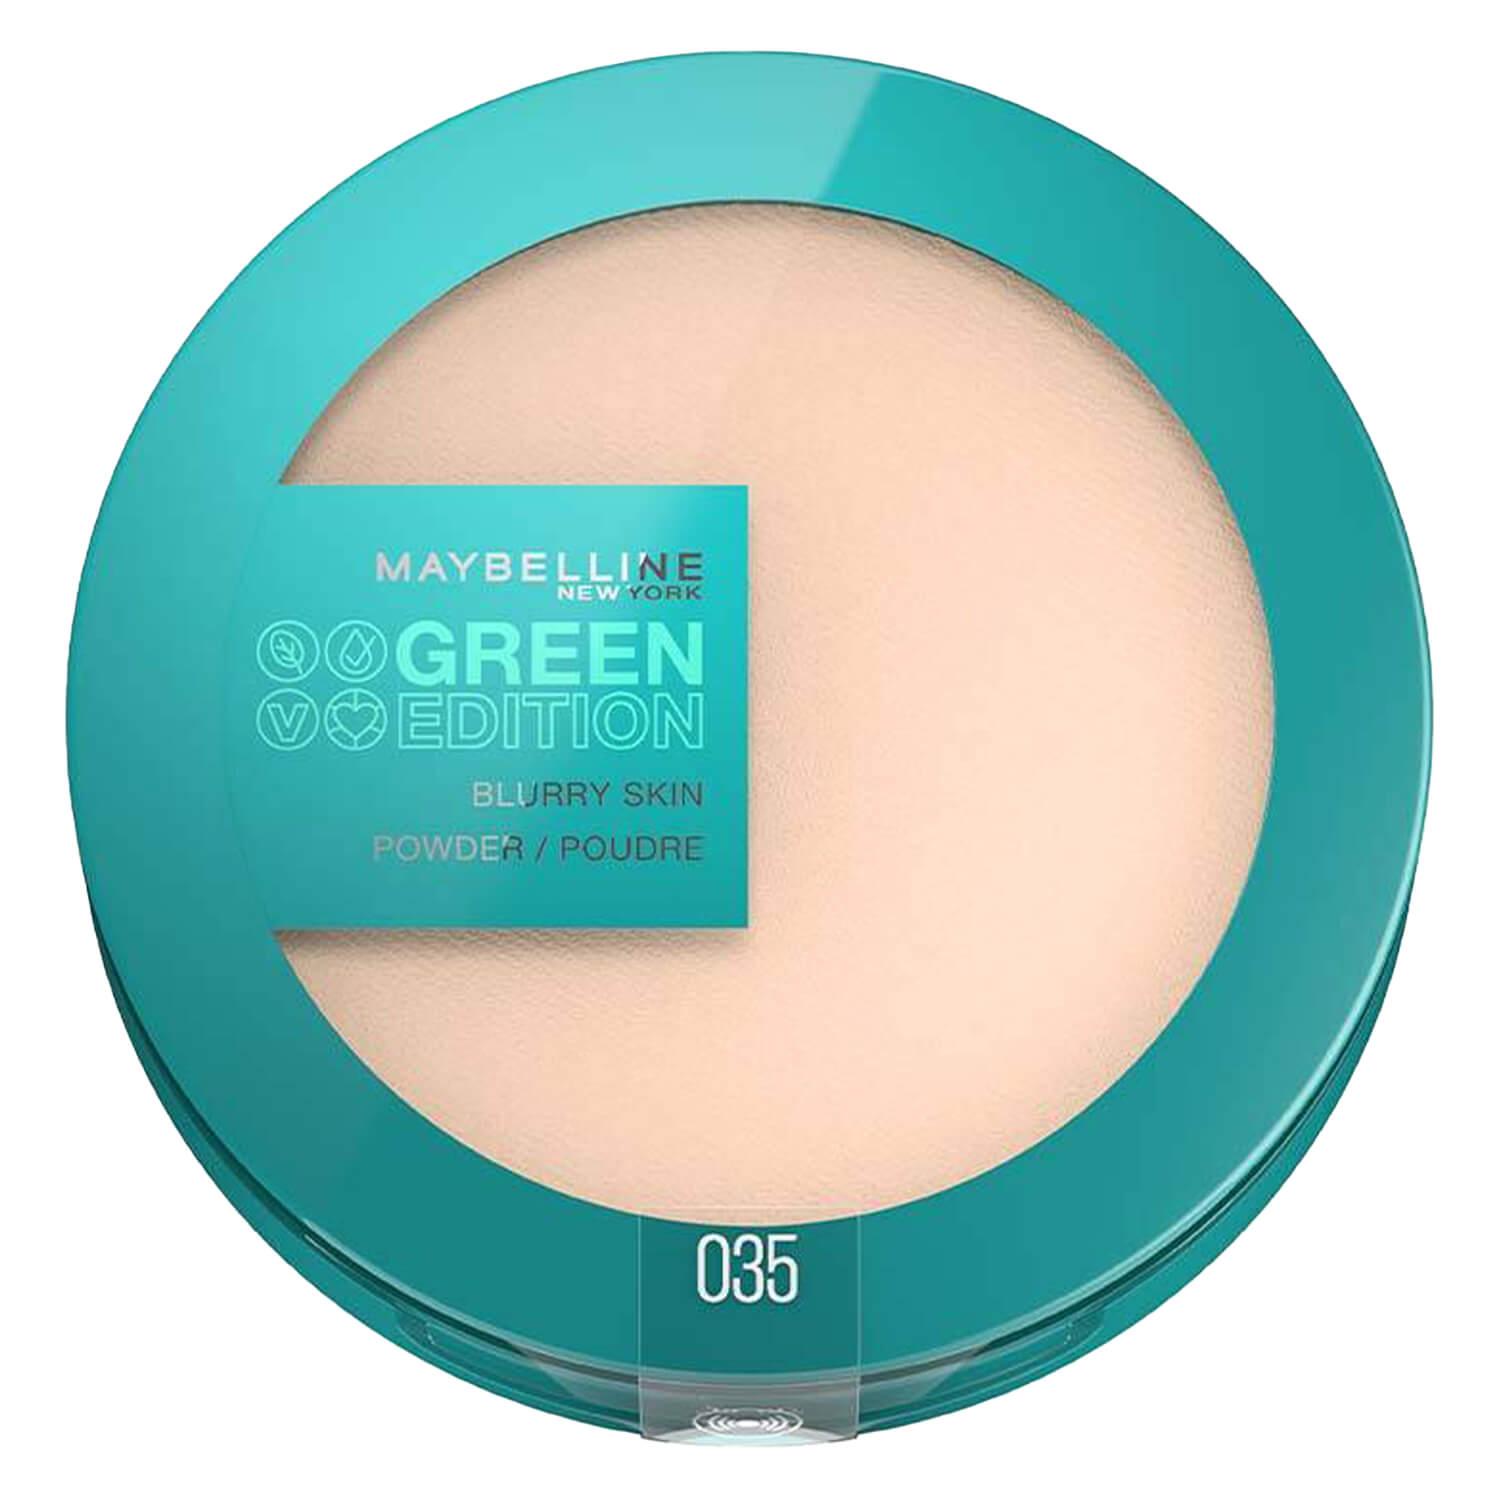 Maybelline NY Teint - Green Edition Blurry Skin Powder 035